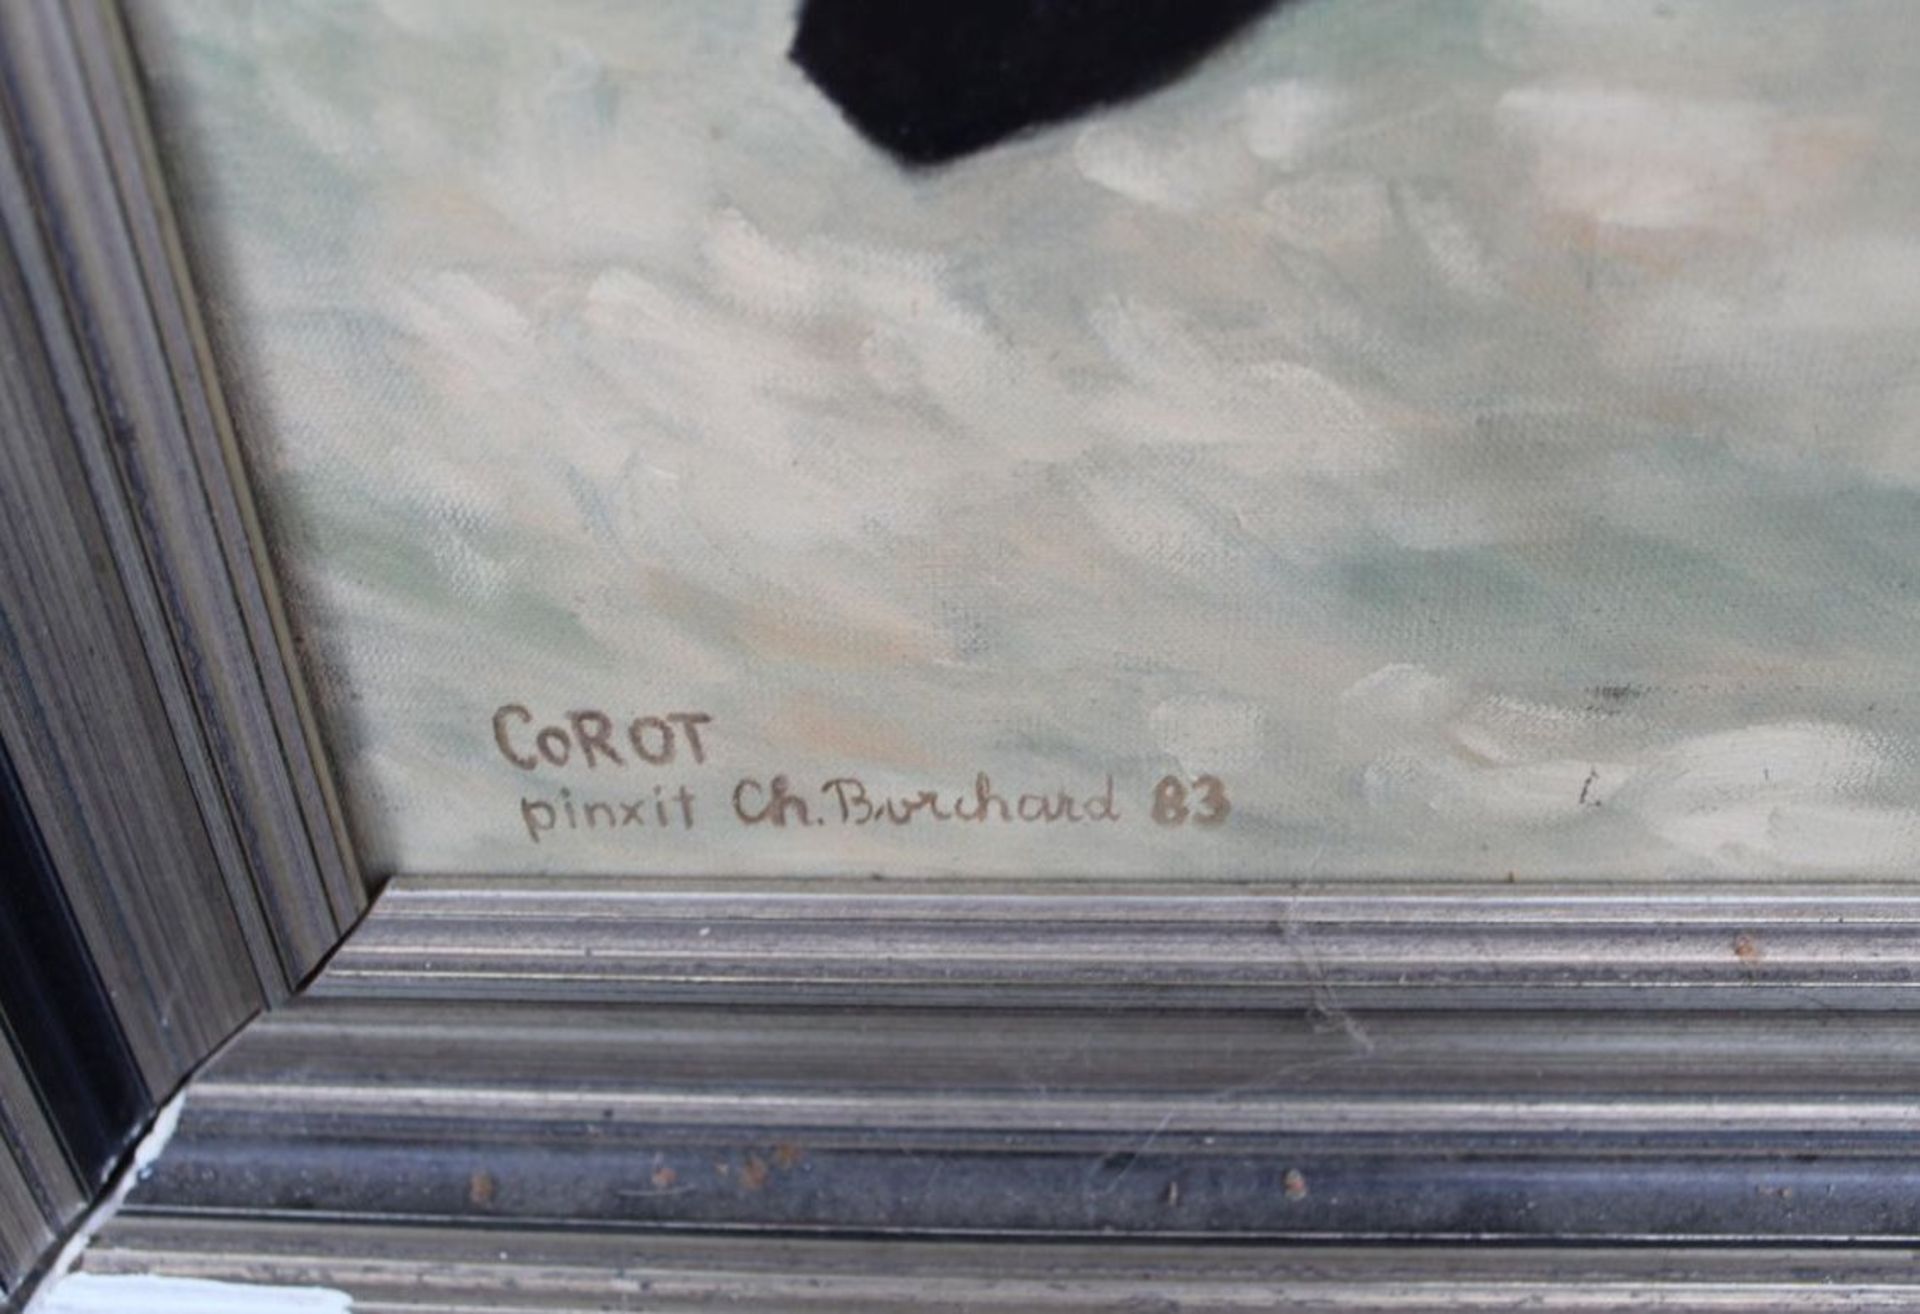 Ch. Borchard (18)83 "Cellospieler" Kopie nach Corot, Öl/Leinen, alt gerahmt, RG 82x63 cm - Bild 4 aus 5